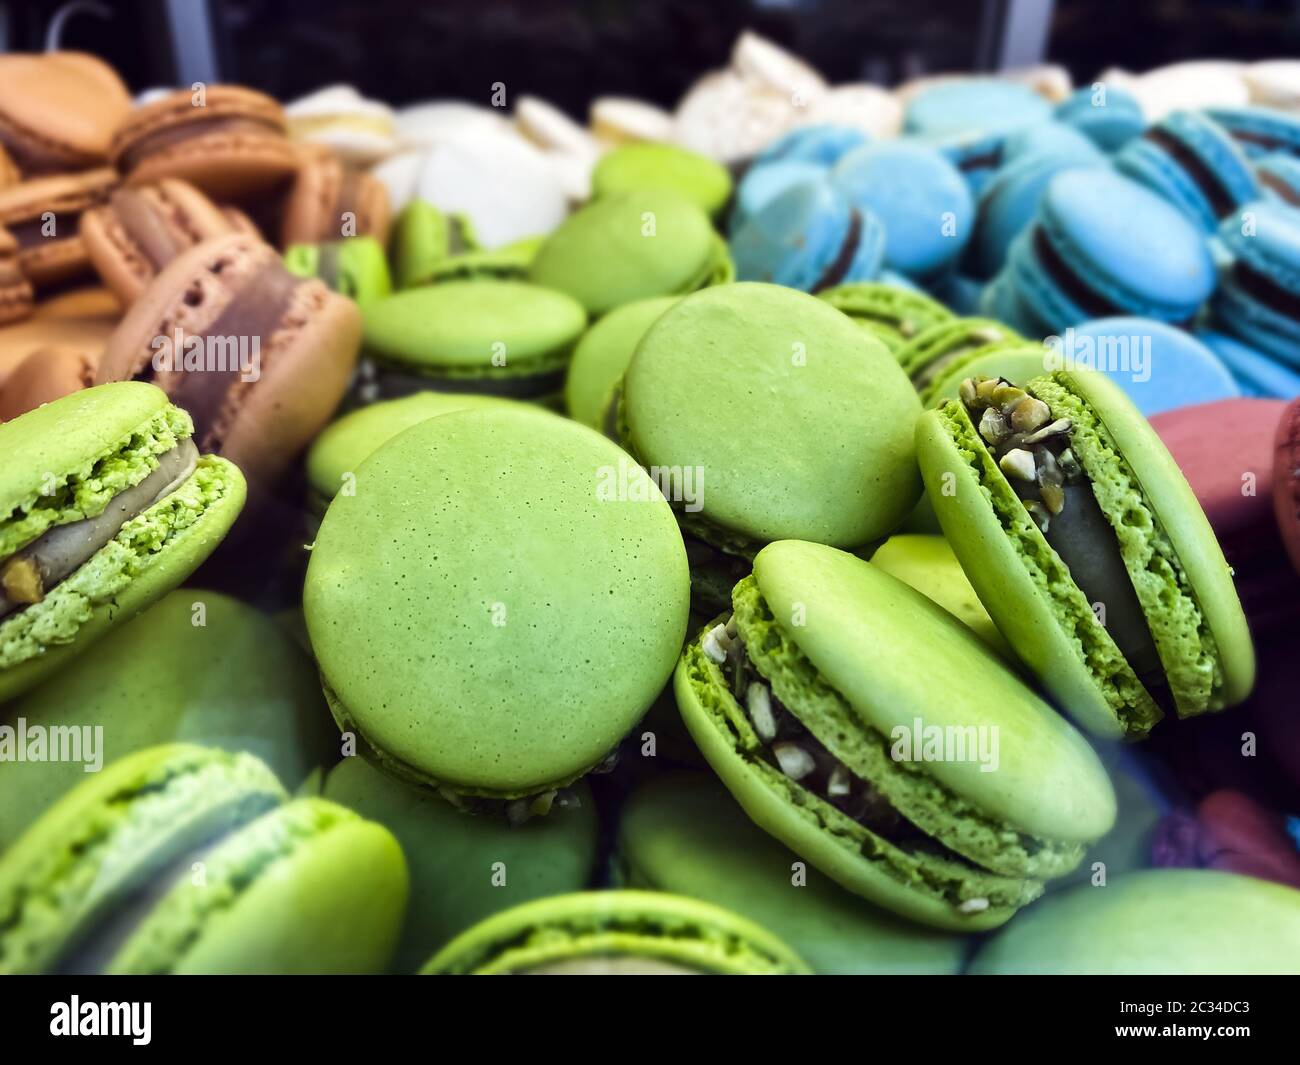 muchas galletas macarons coloridas arregladas desordenadamente Foto de stock